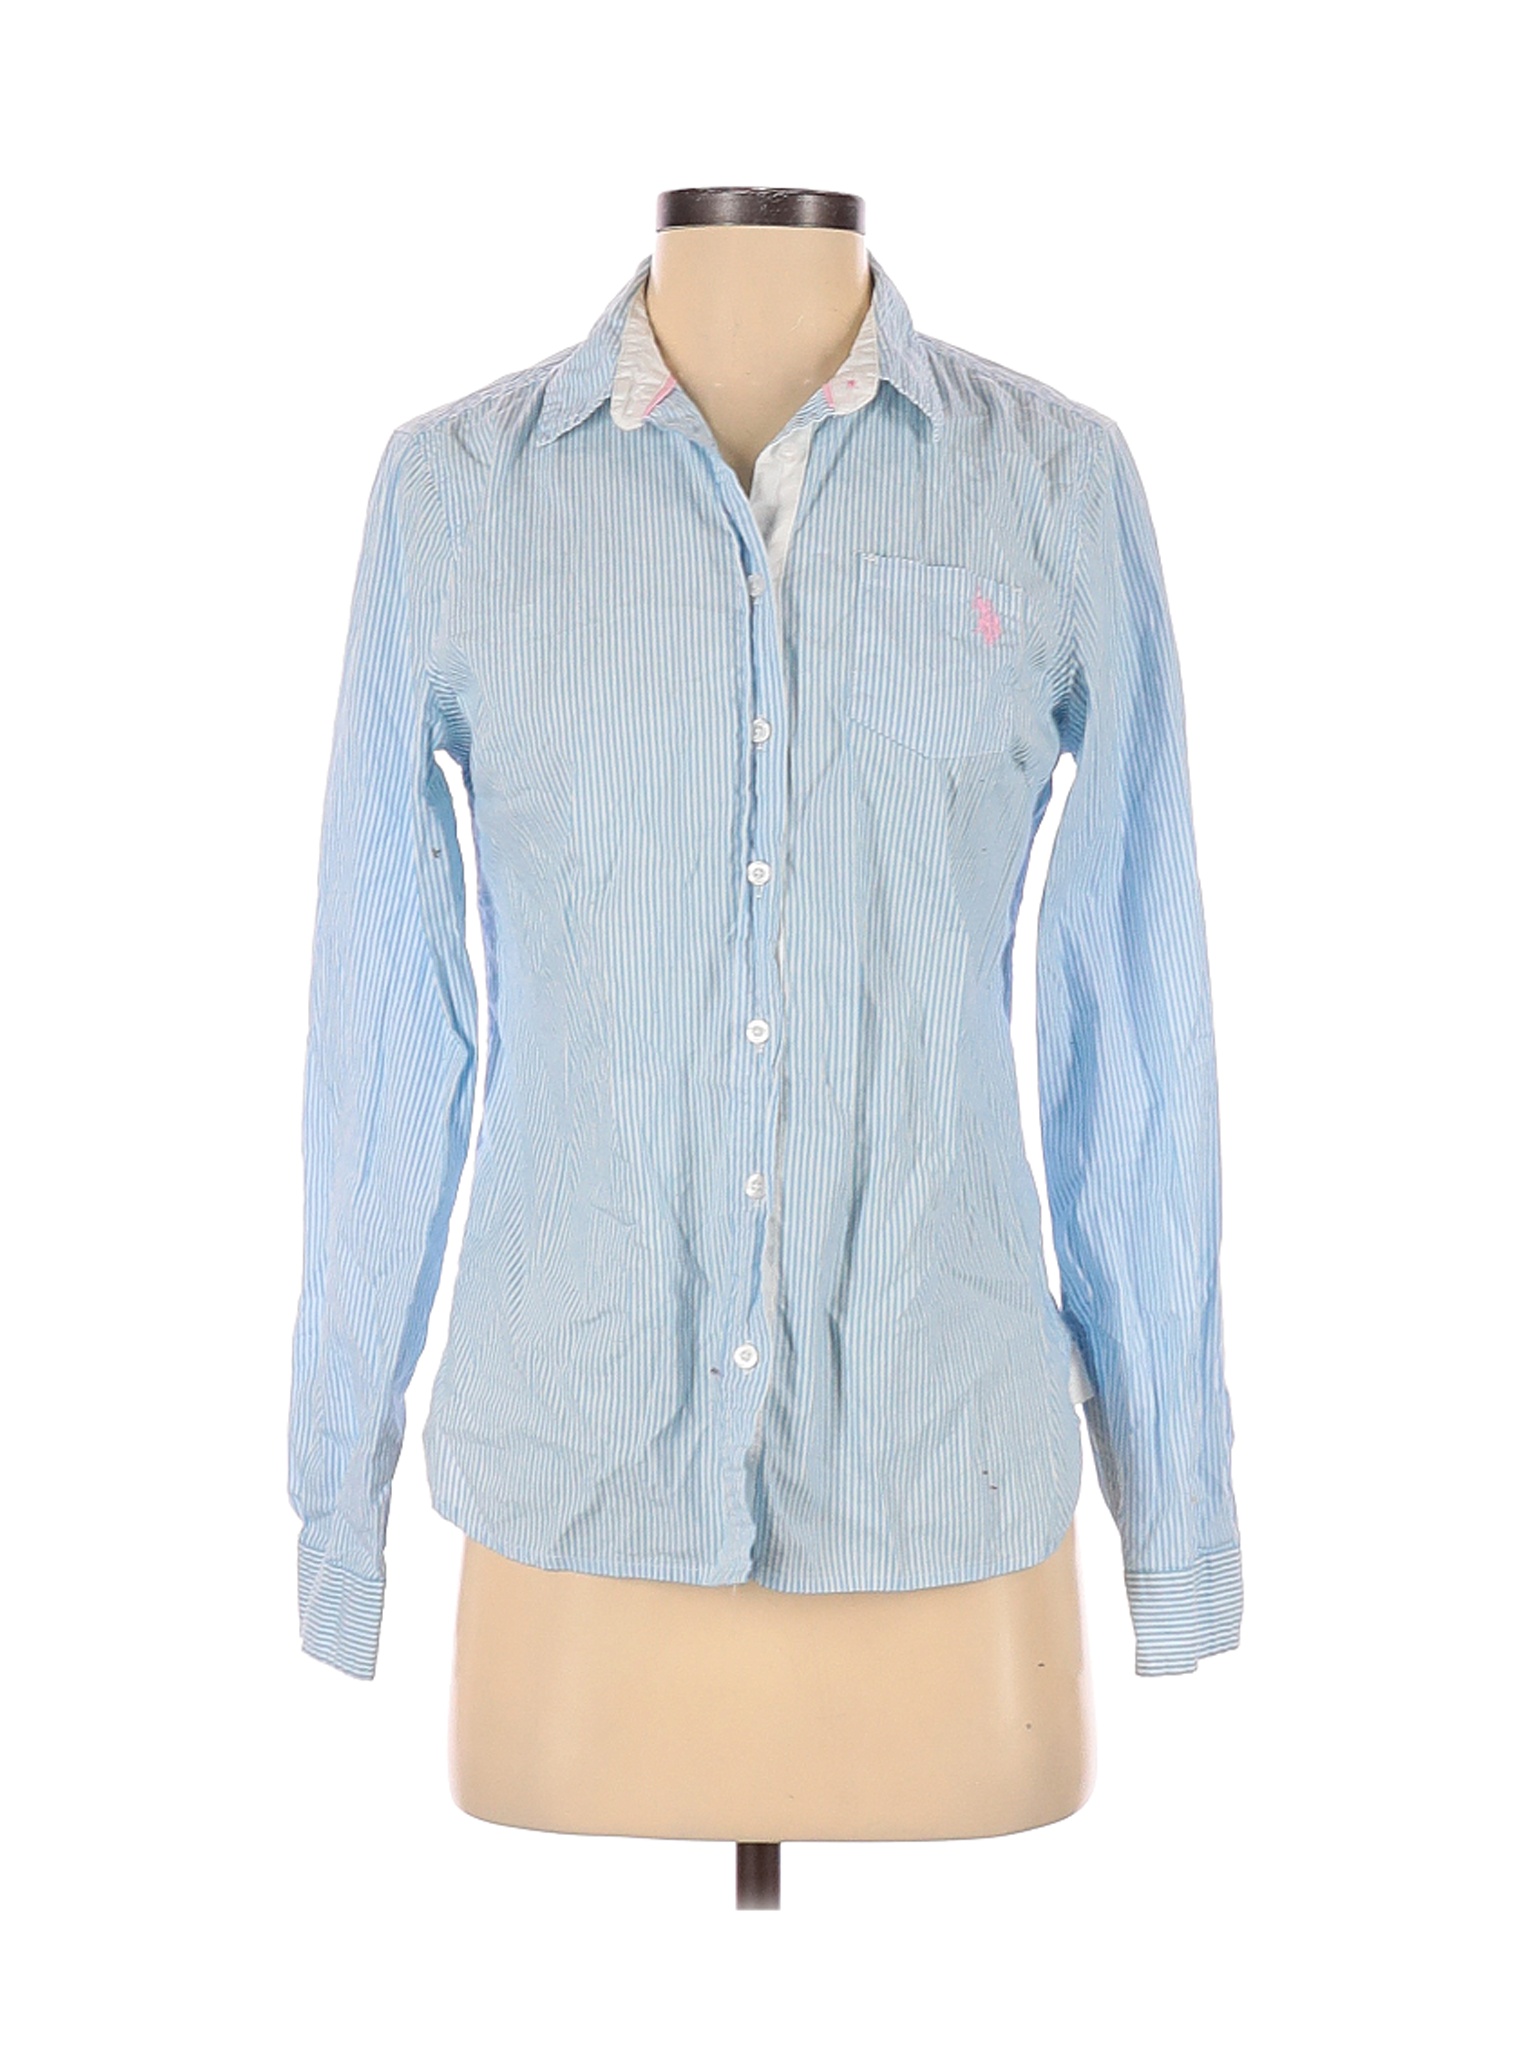 U.S. Polo Assn. Women Blue Long Sleeve Button-Down Shirt S | eBay